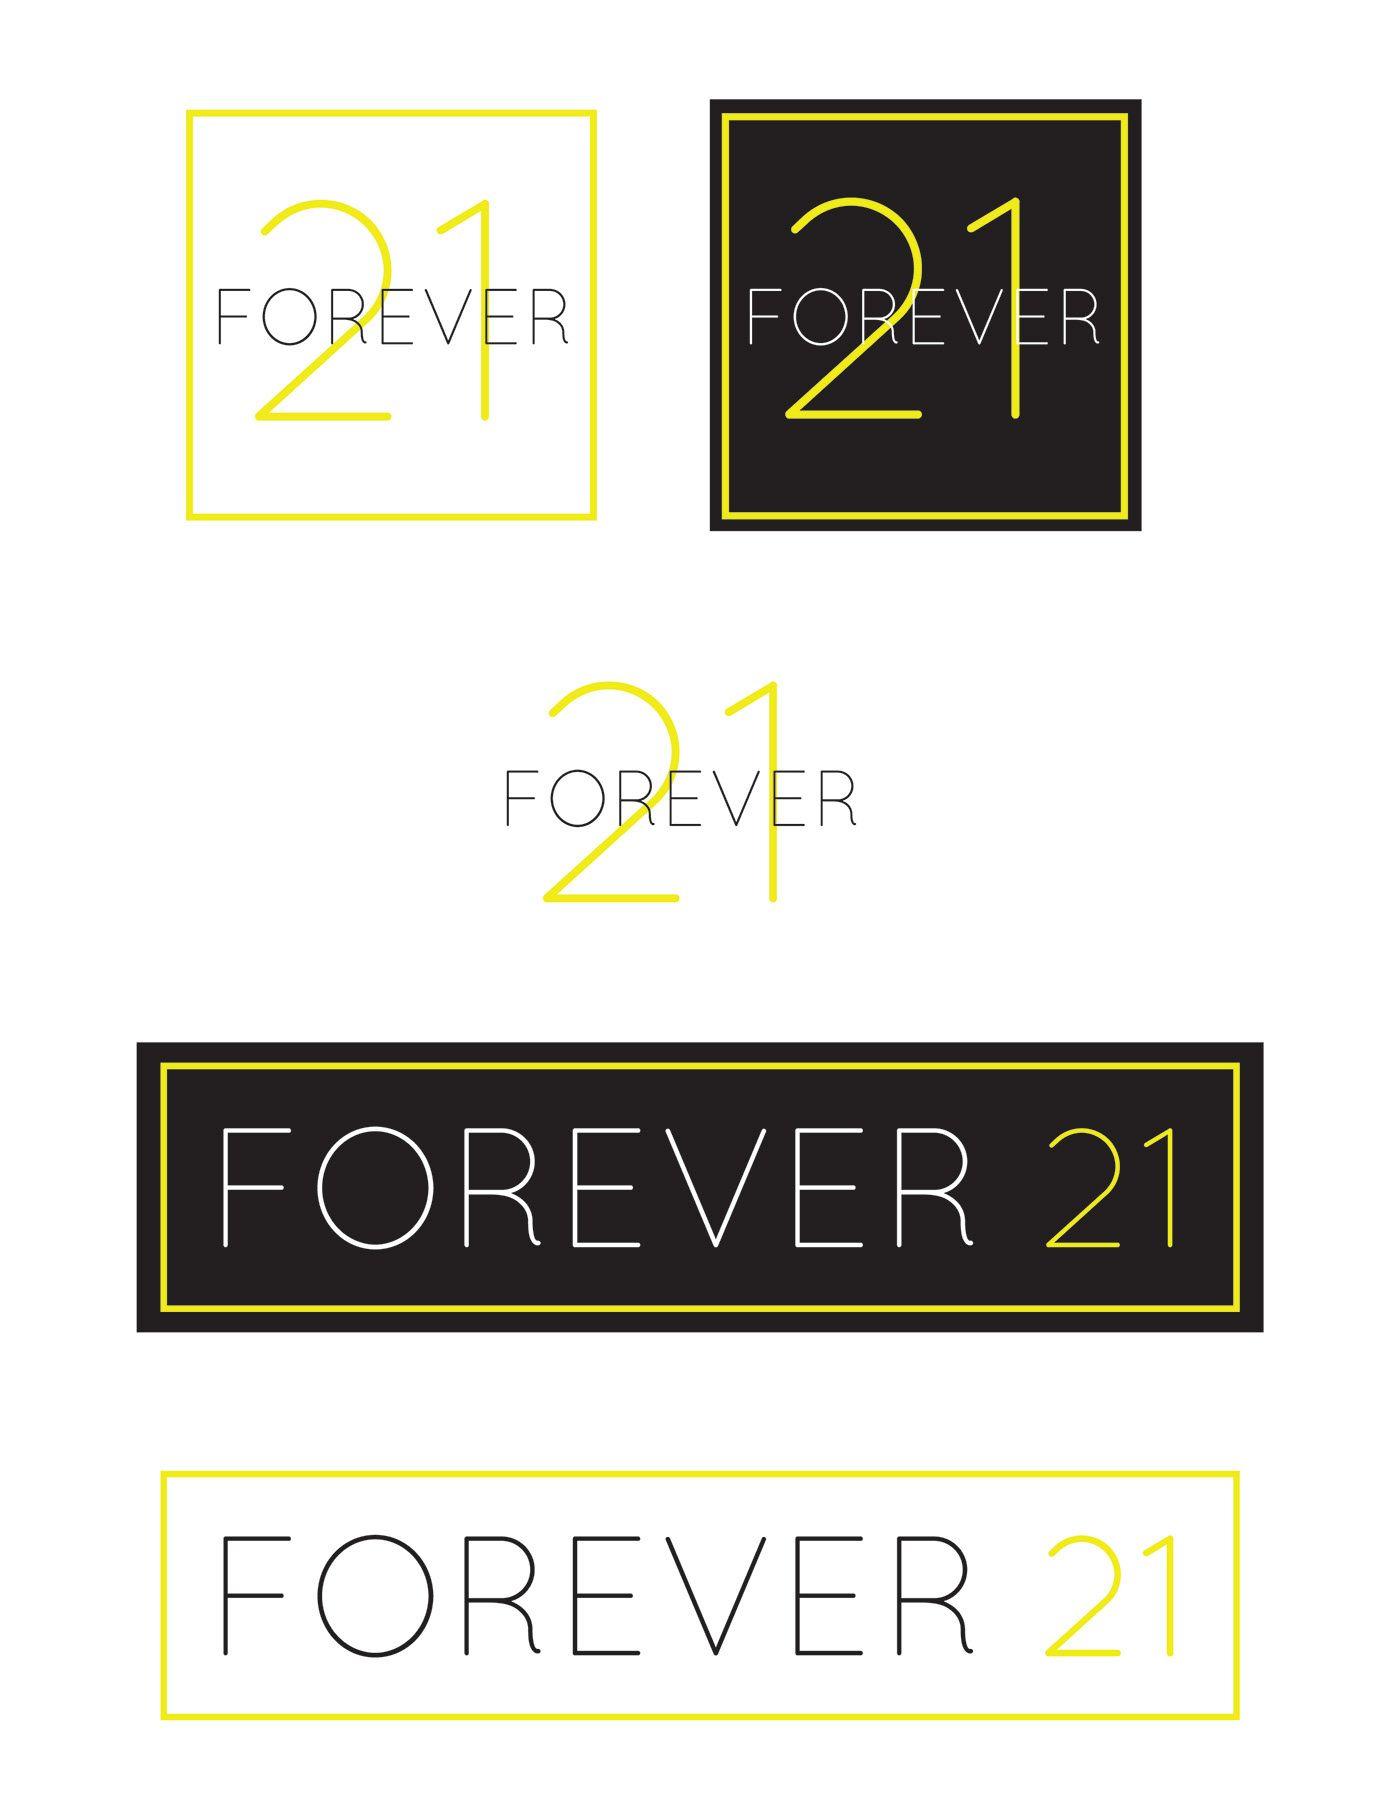 Forever 21 Company Logo - Forever 21 Re-brand on Behance